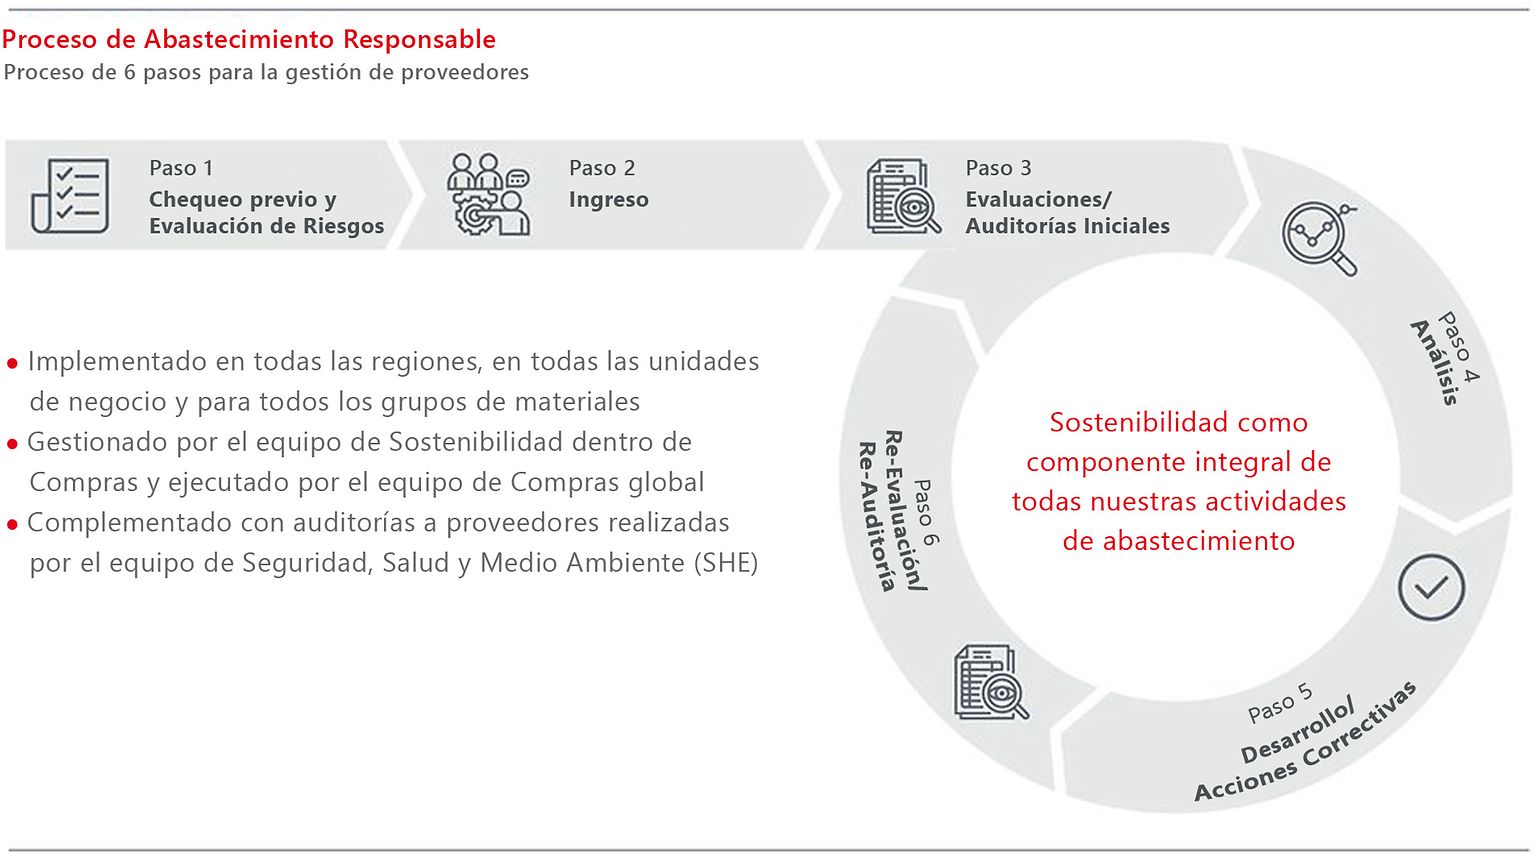 Gráfico del proceso de abastecimiento responsable de Henkel